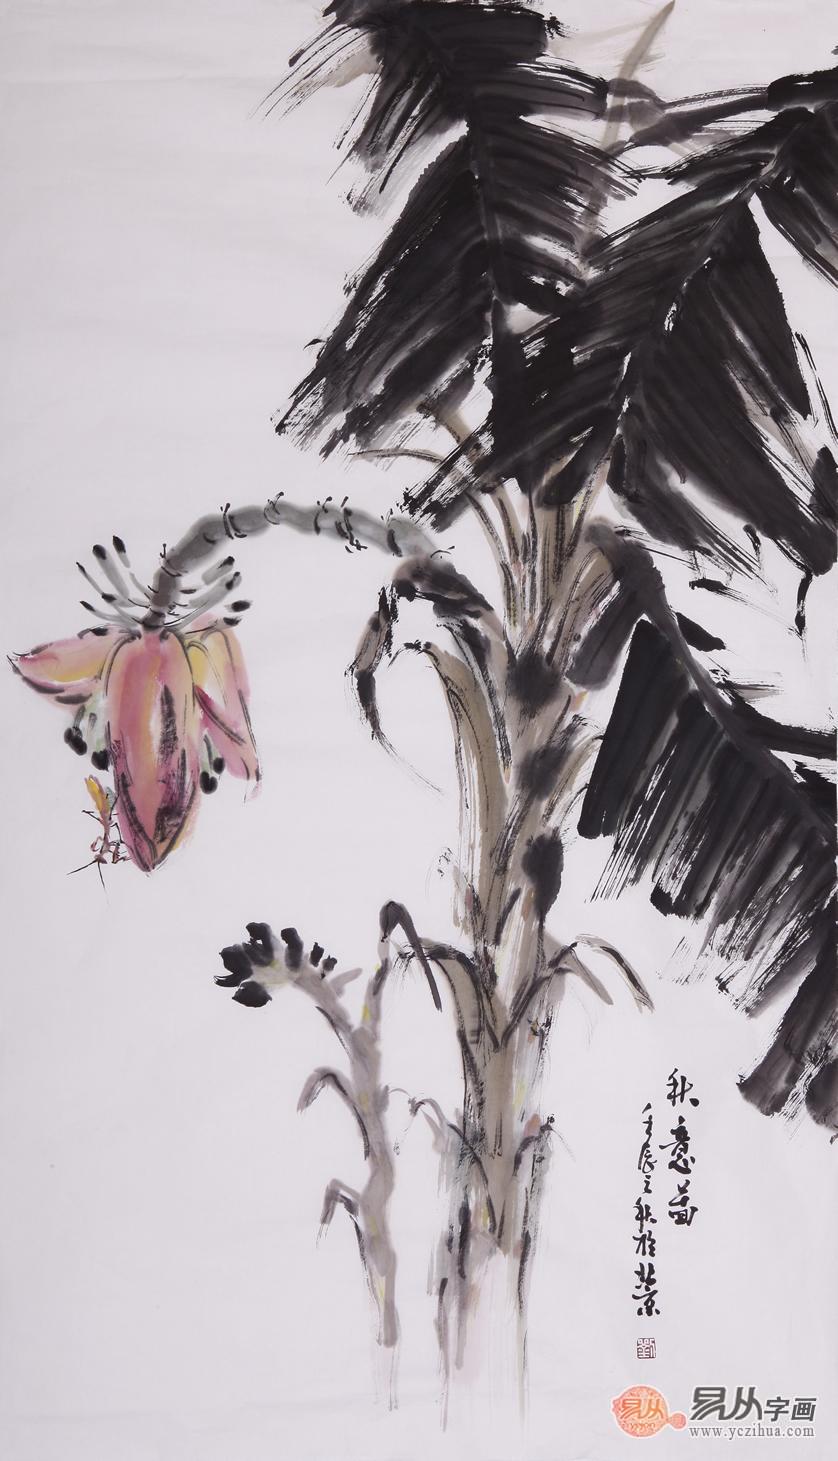 刘海武三尺竖幅花鸟作品《秋意图》 